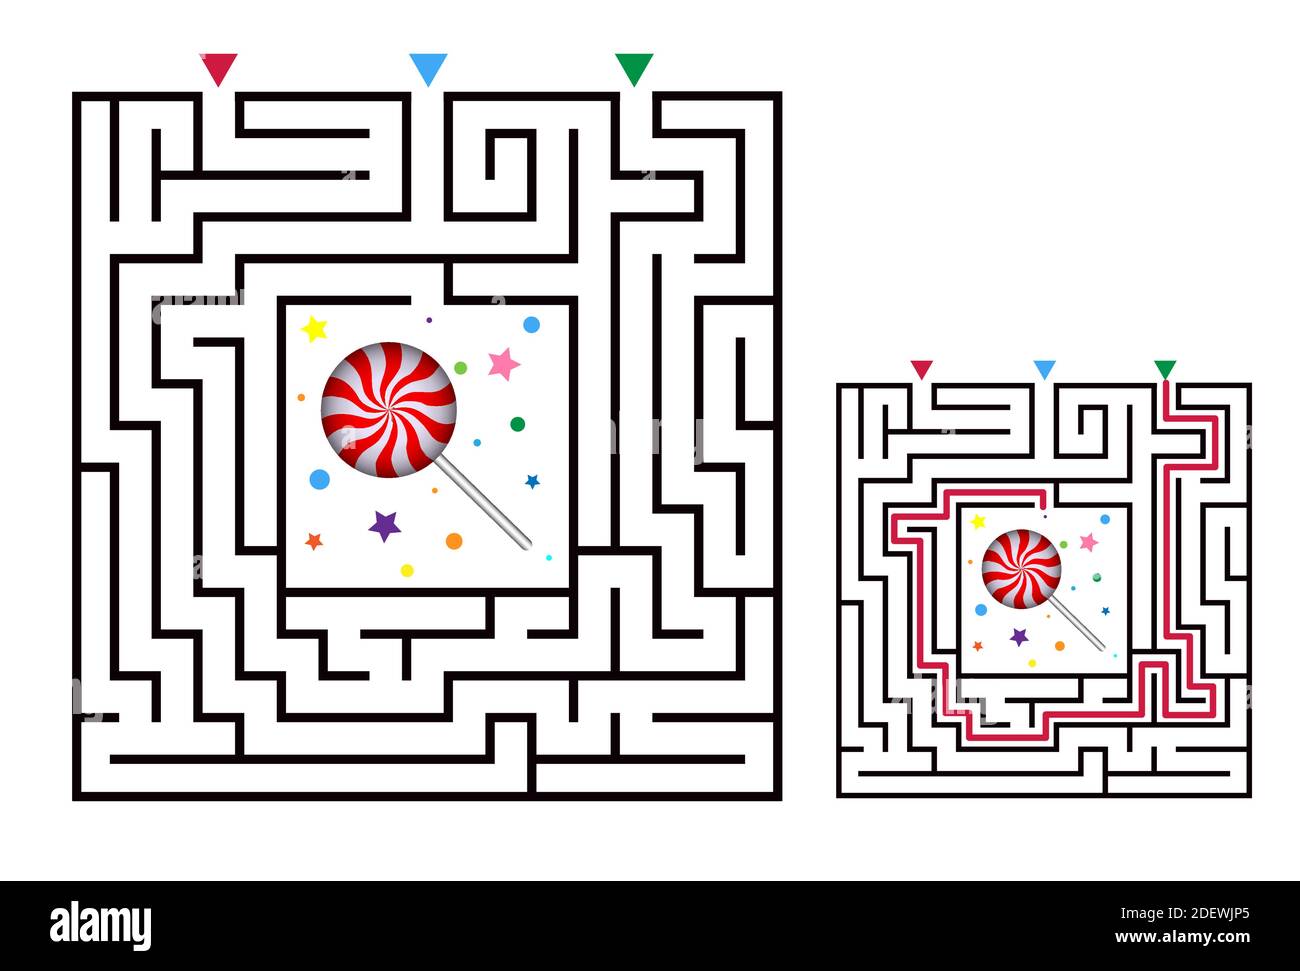 Labirinto quadrato gioco labirinto per bambini. La logica labirintica si dilata con la caramella. Tre ingressi e una strada a destra per andare. Immagine piatta vettoriale Illustrazione Vettoriale